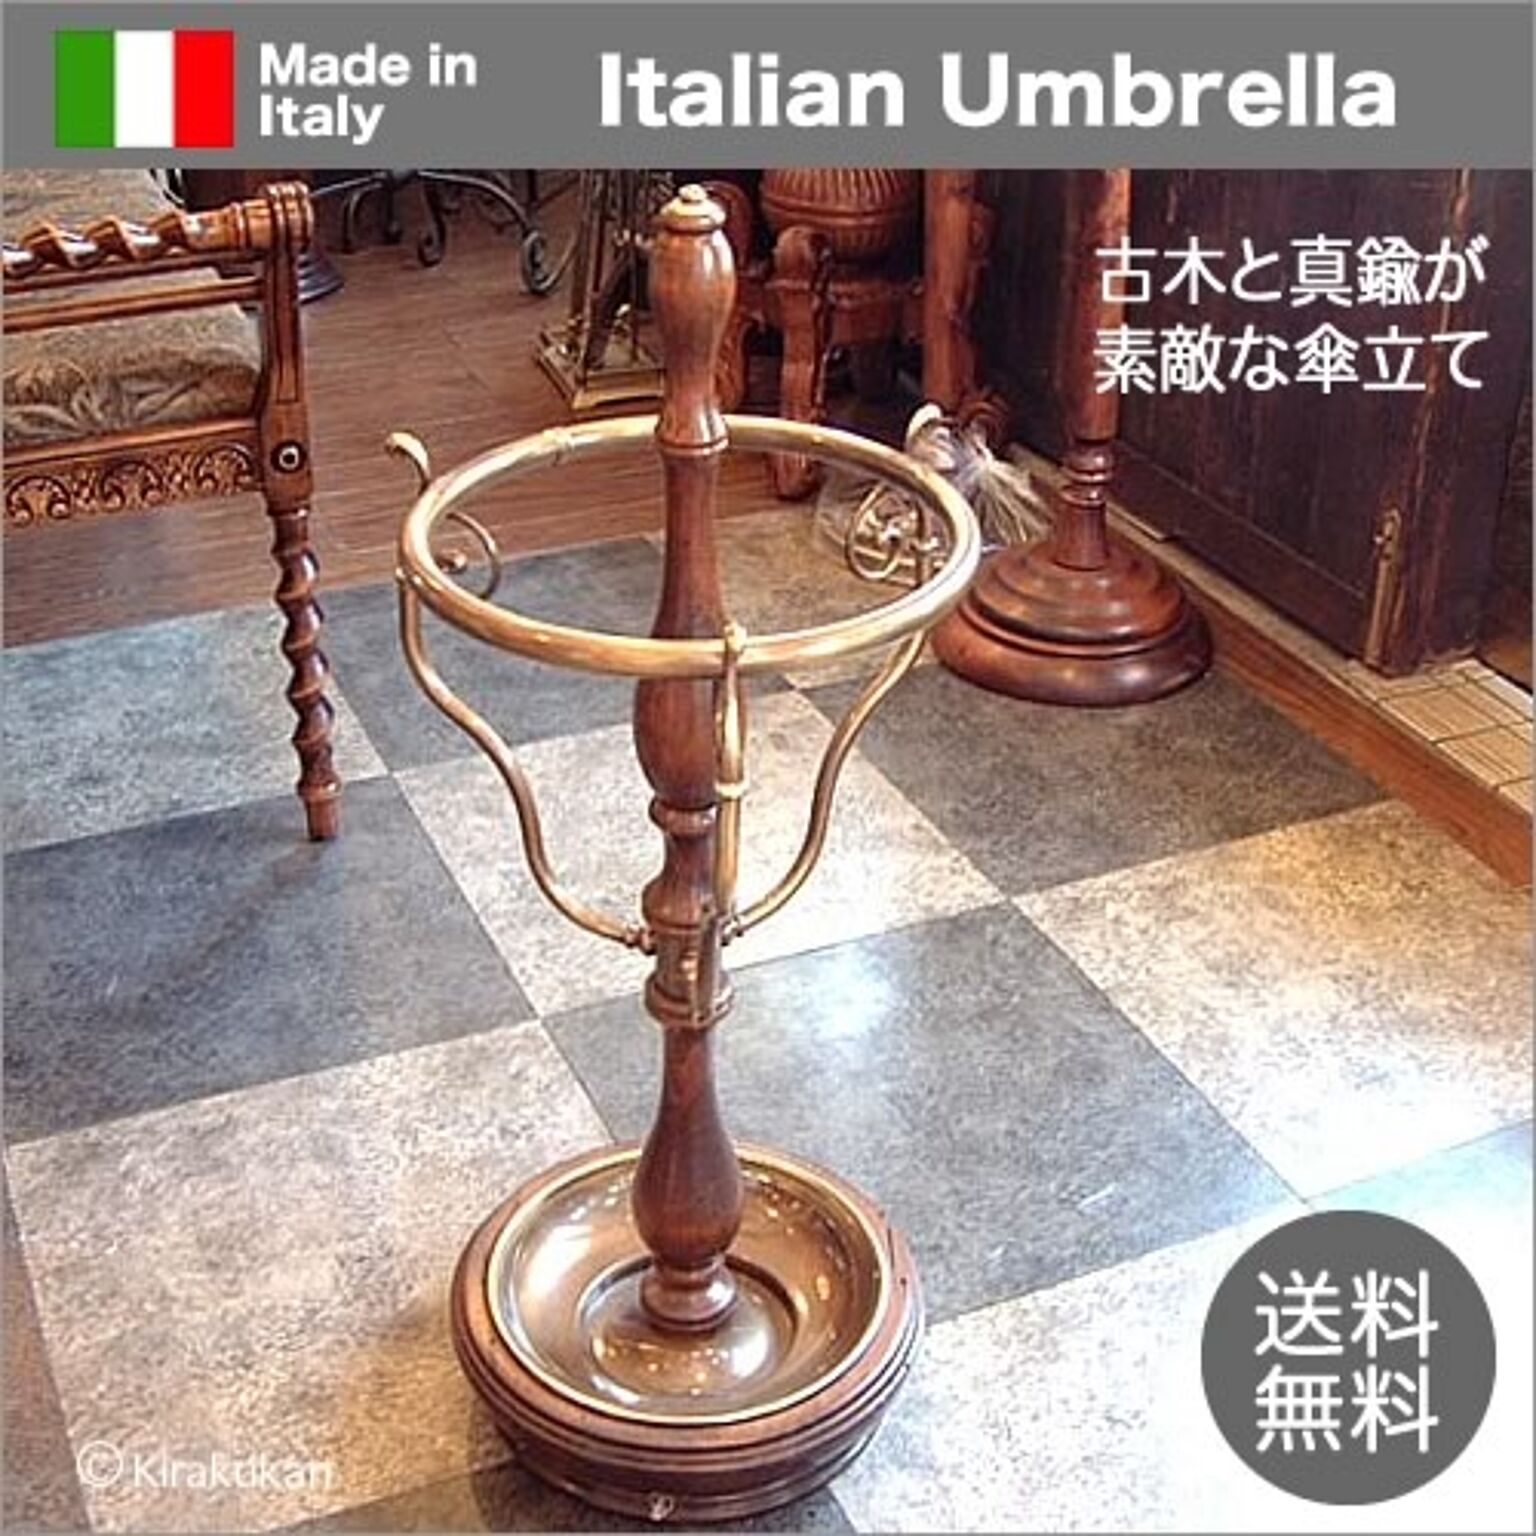 イタリア製 傘立て 木製 カパーニ社製 古木 アンブレラスタンド 真鍮